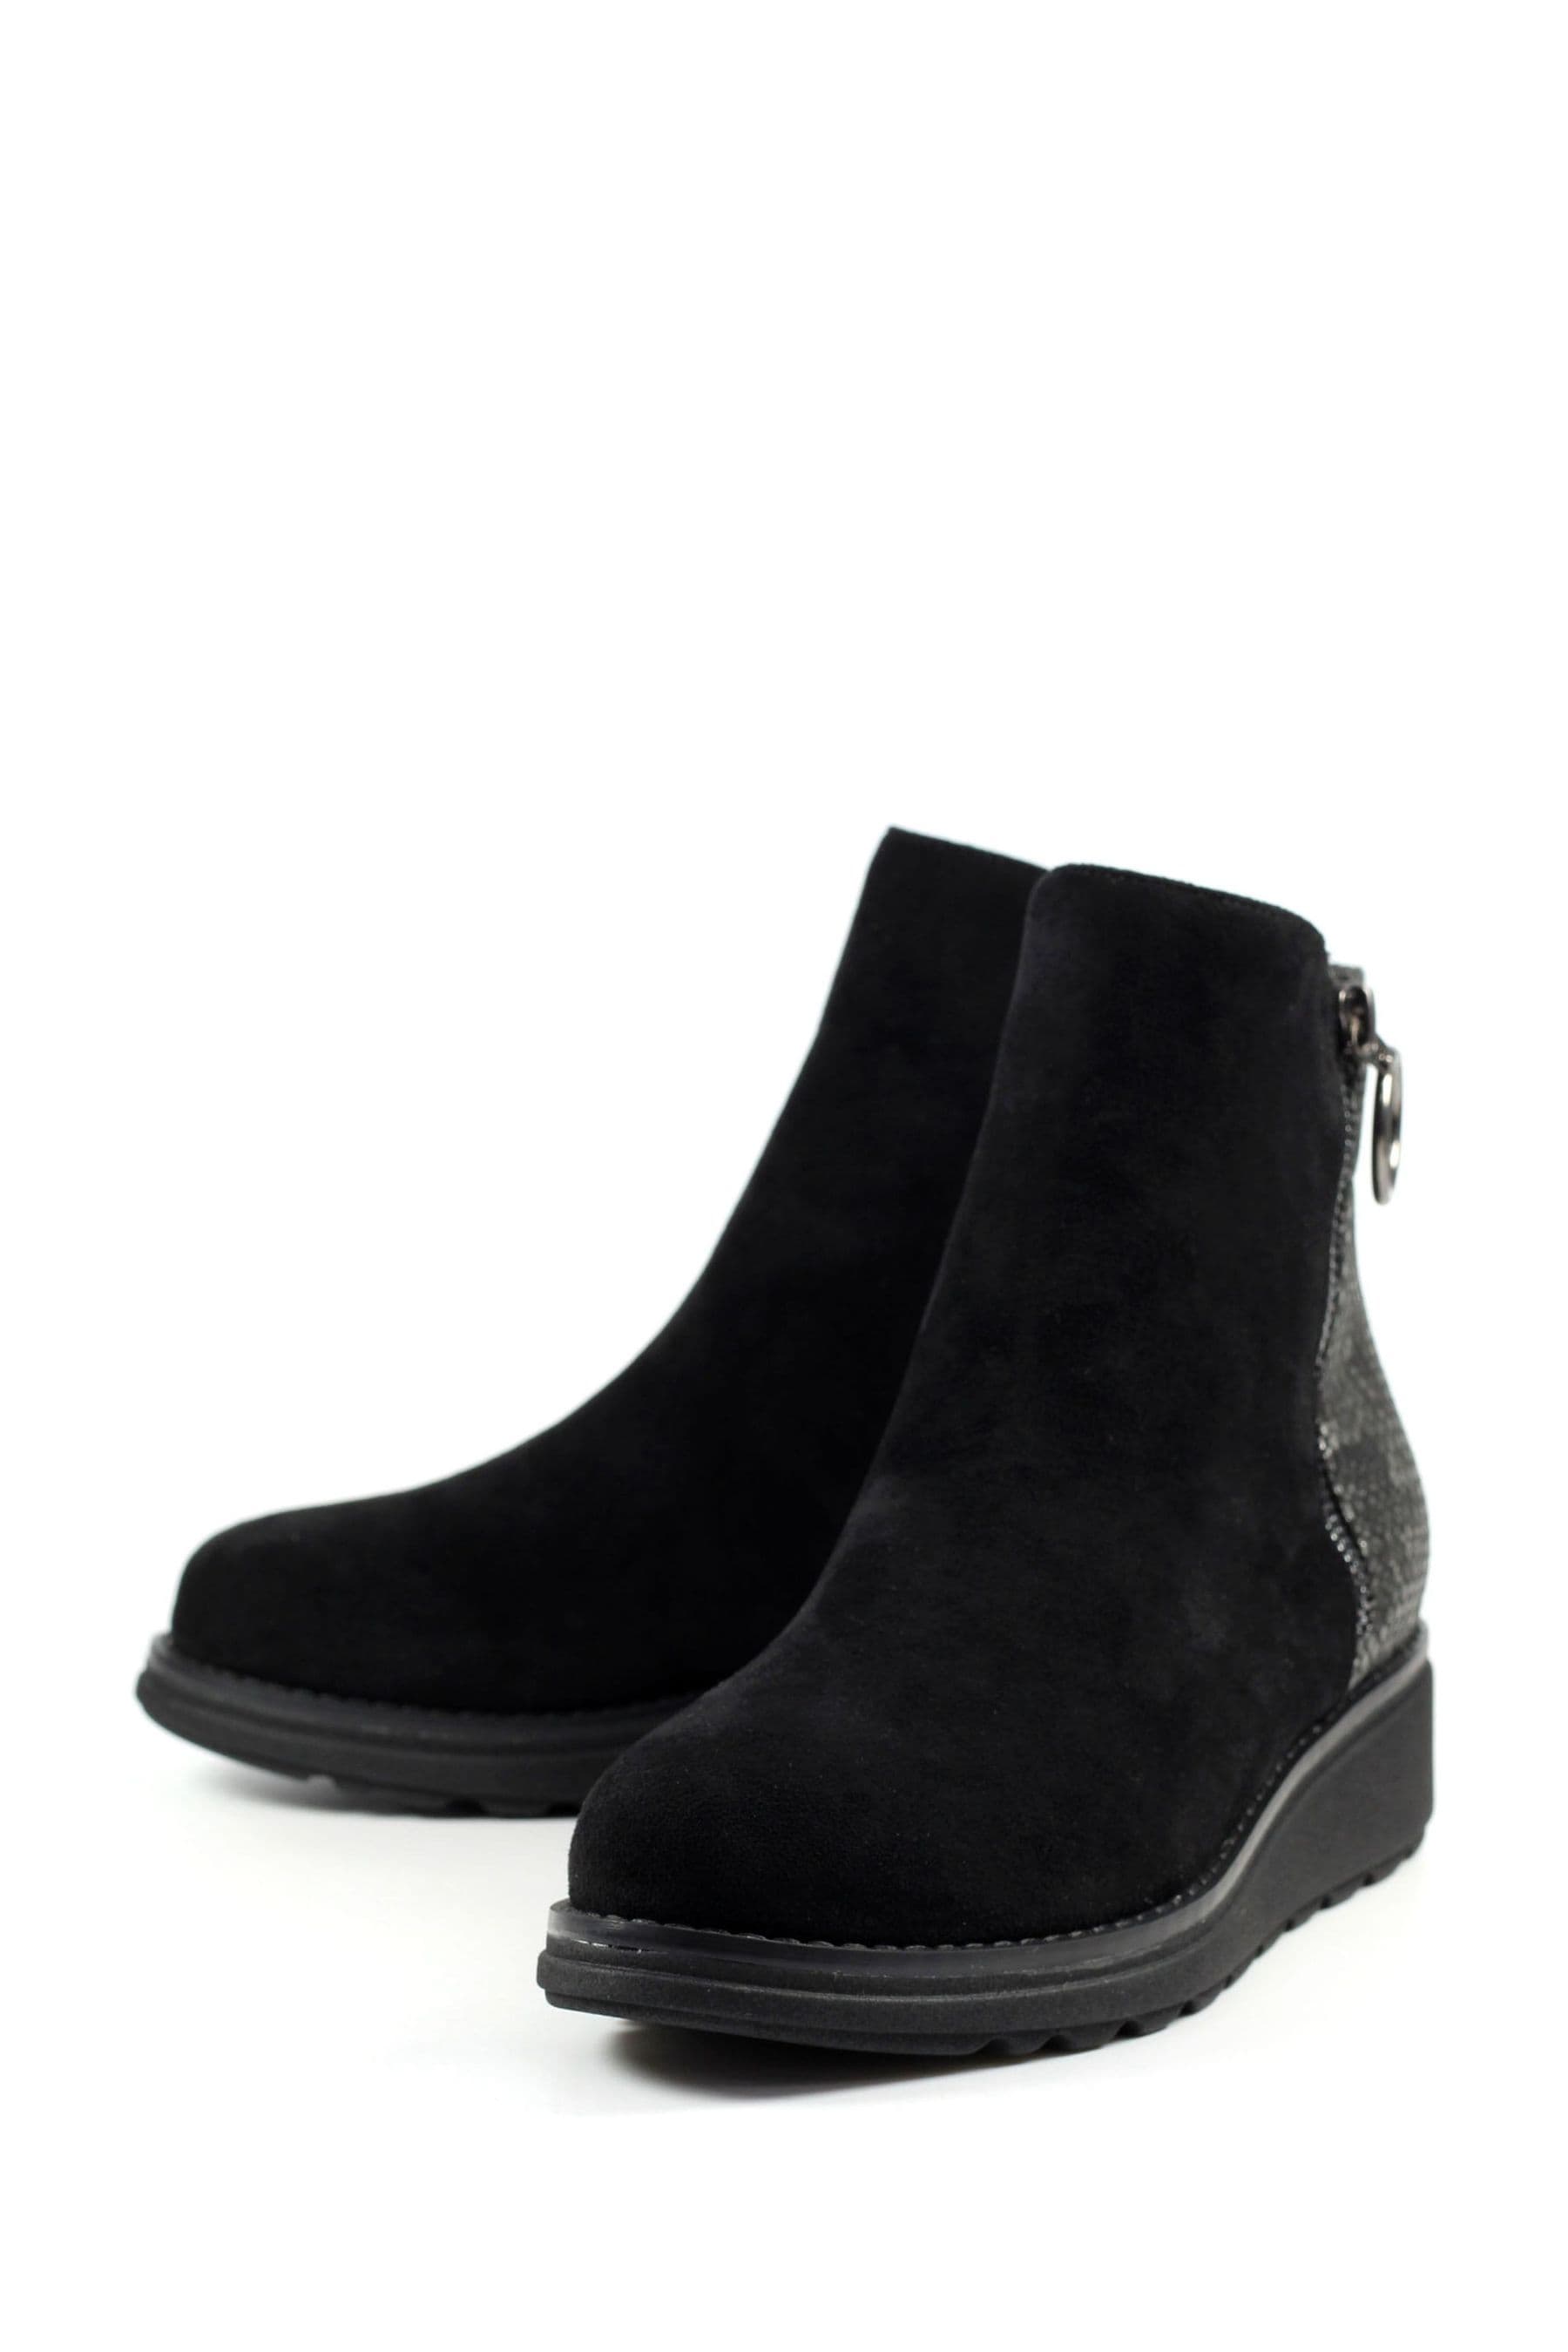 Buy Lunar Alder Wedge Black Ankle Boots from the Next UK online shop